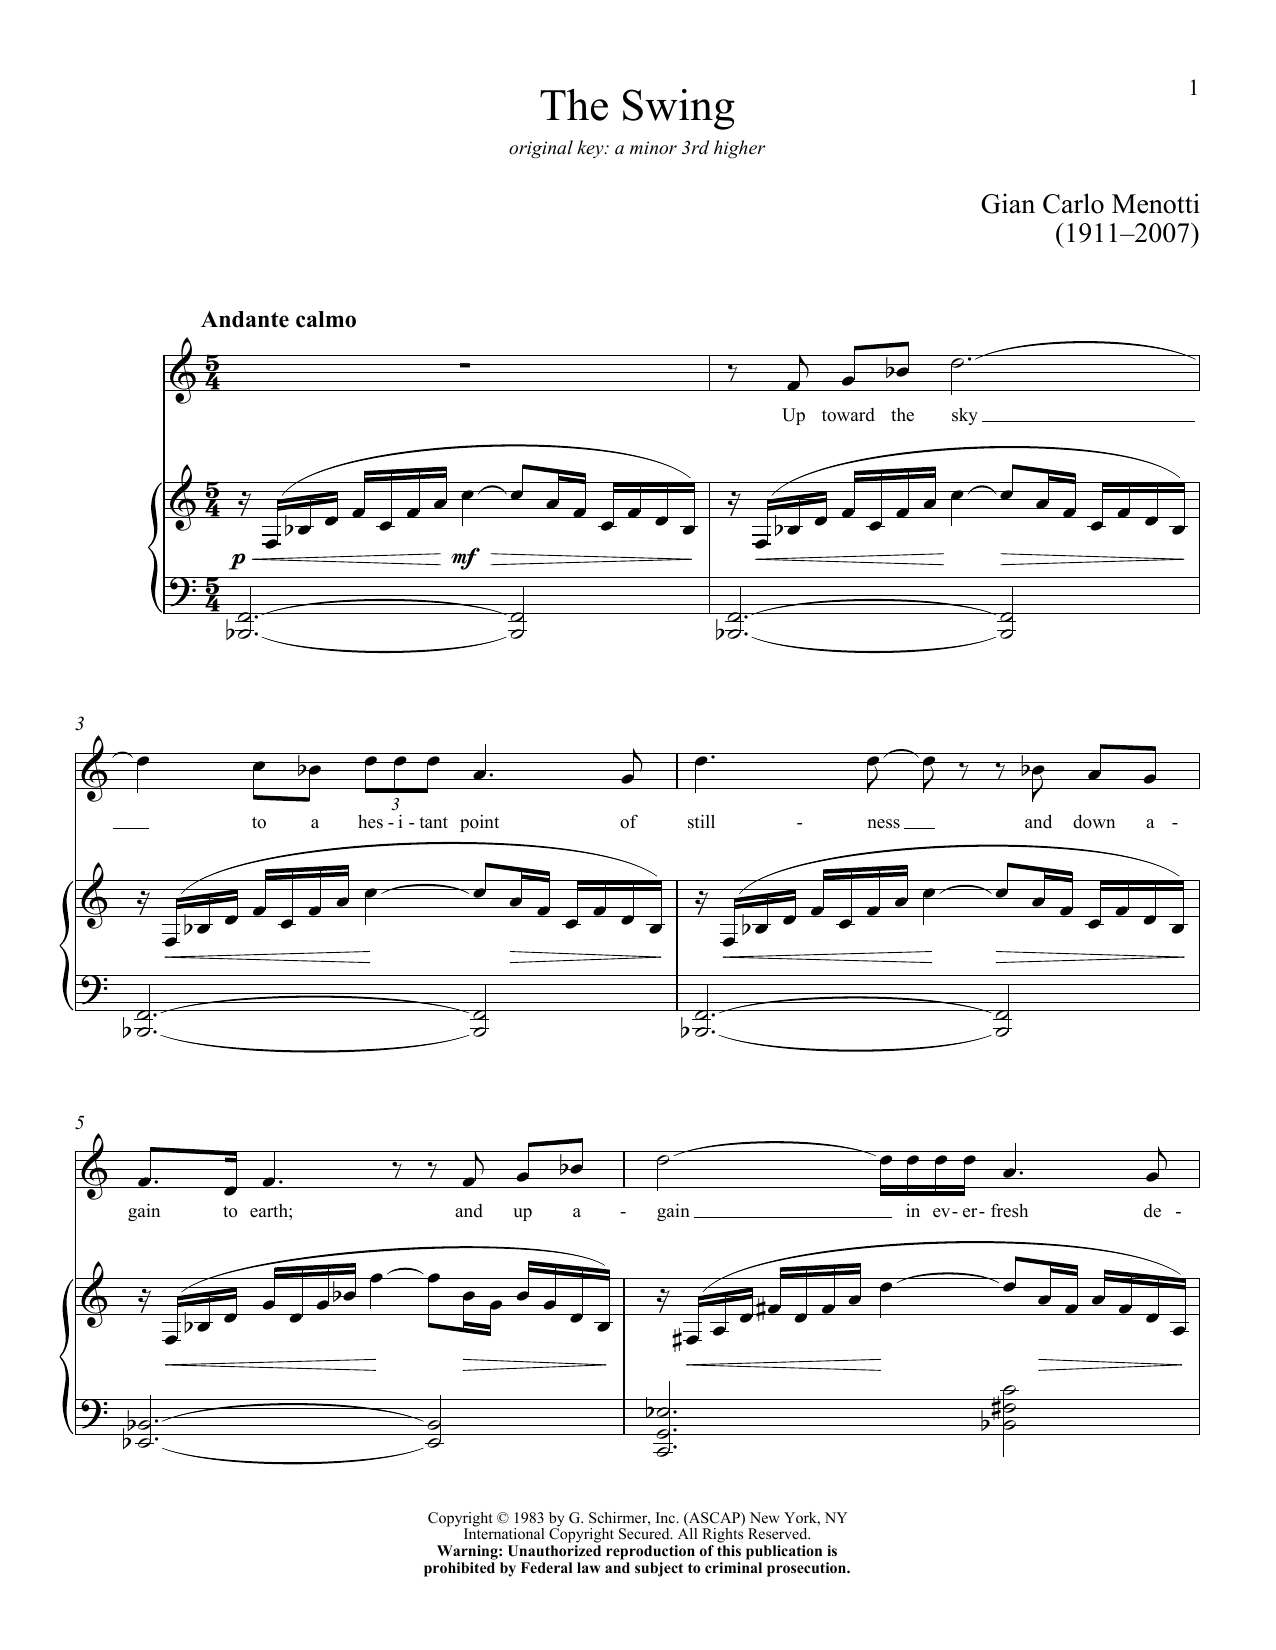 Download Gian Carlo Menotti The Swing Sheet Music